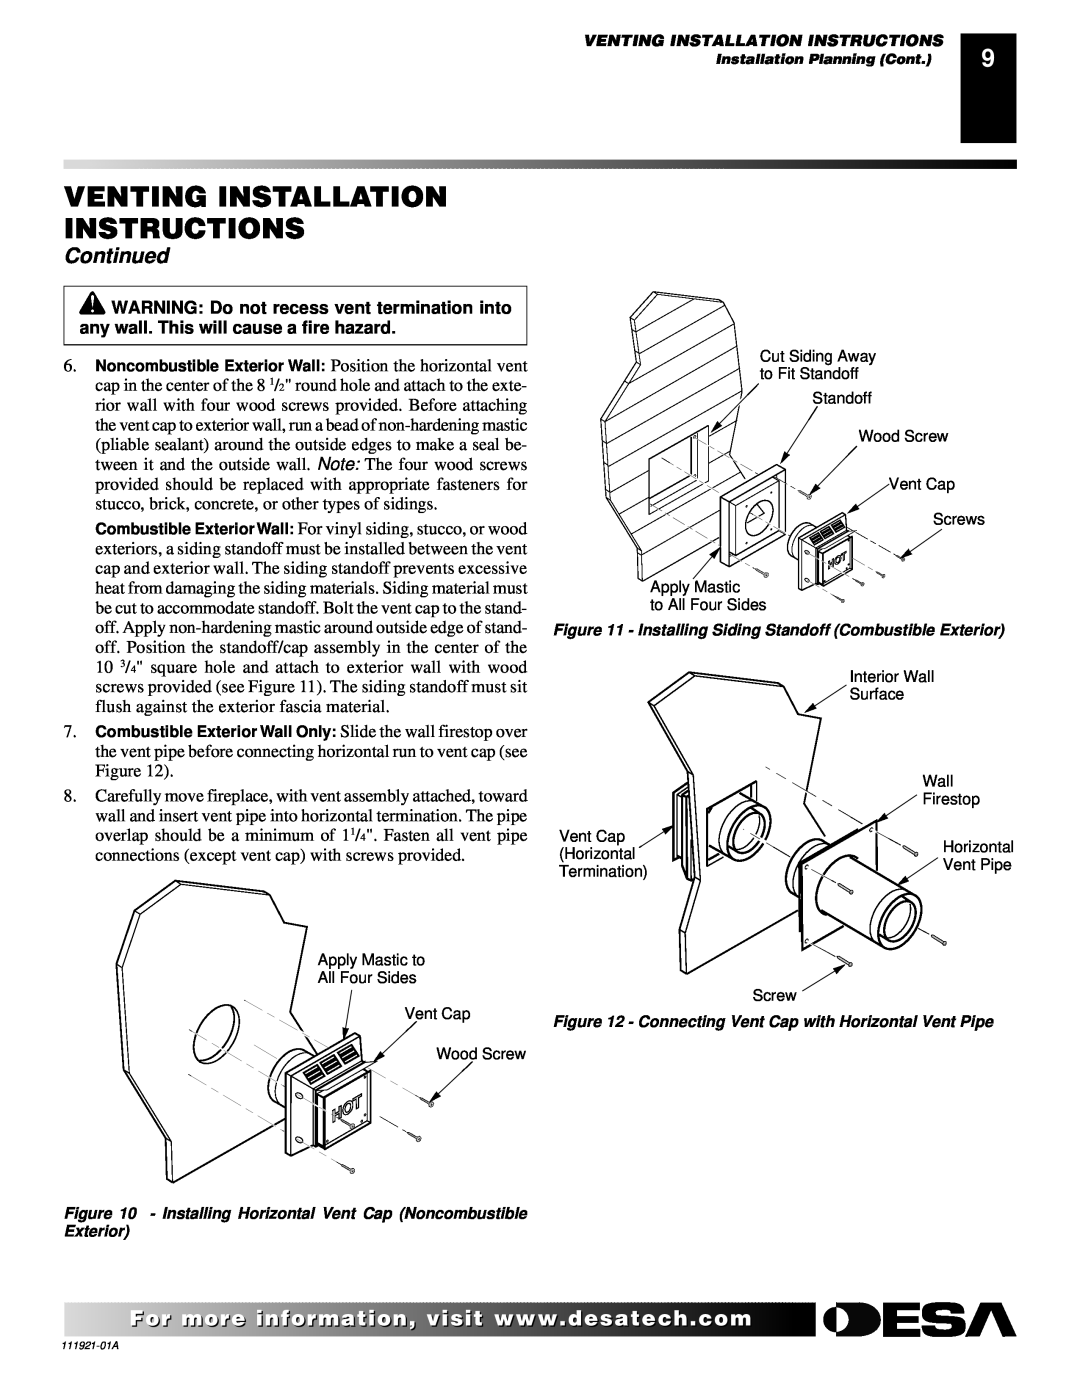 Desa (V)K42N installation manual Venting Installation Instructions, Continued 